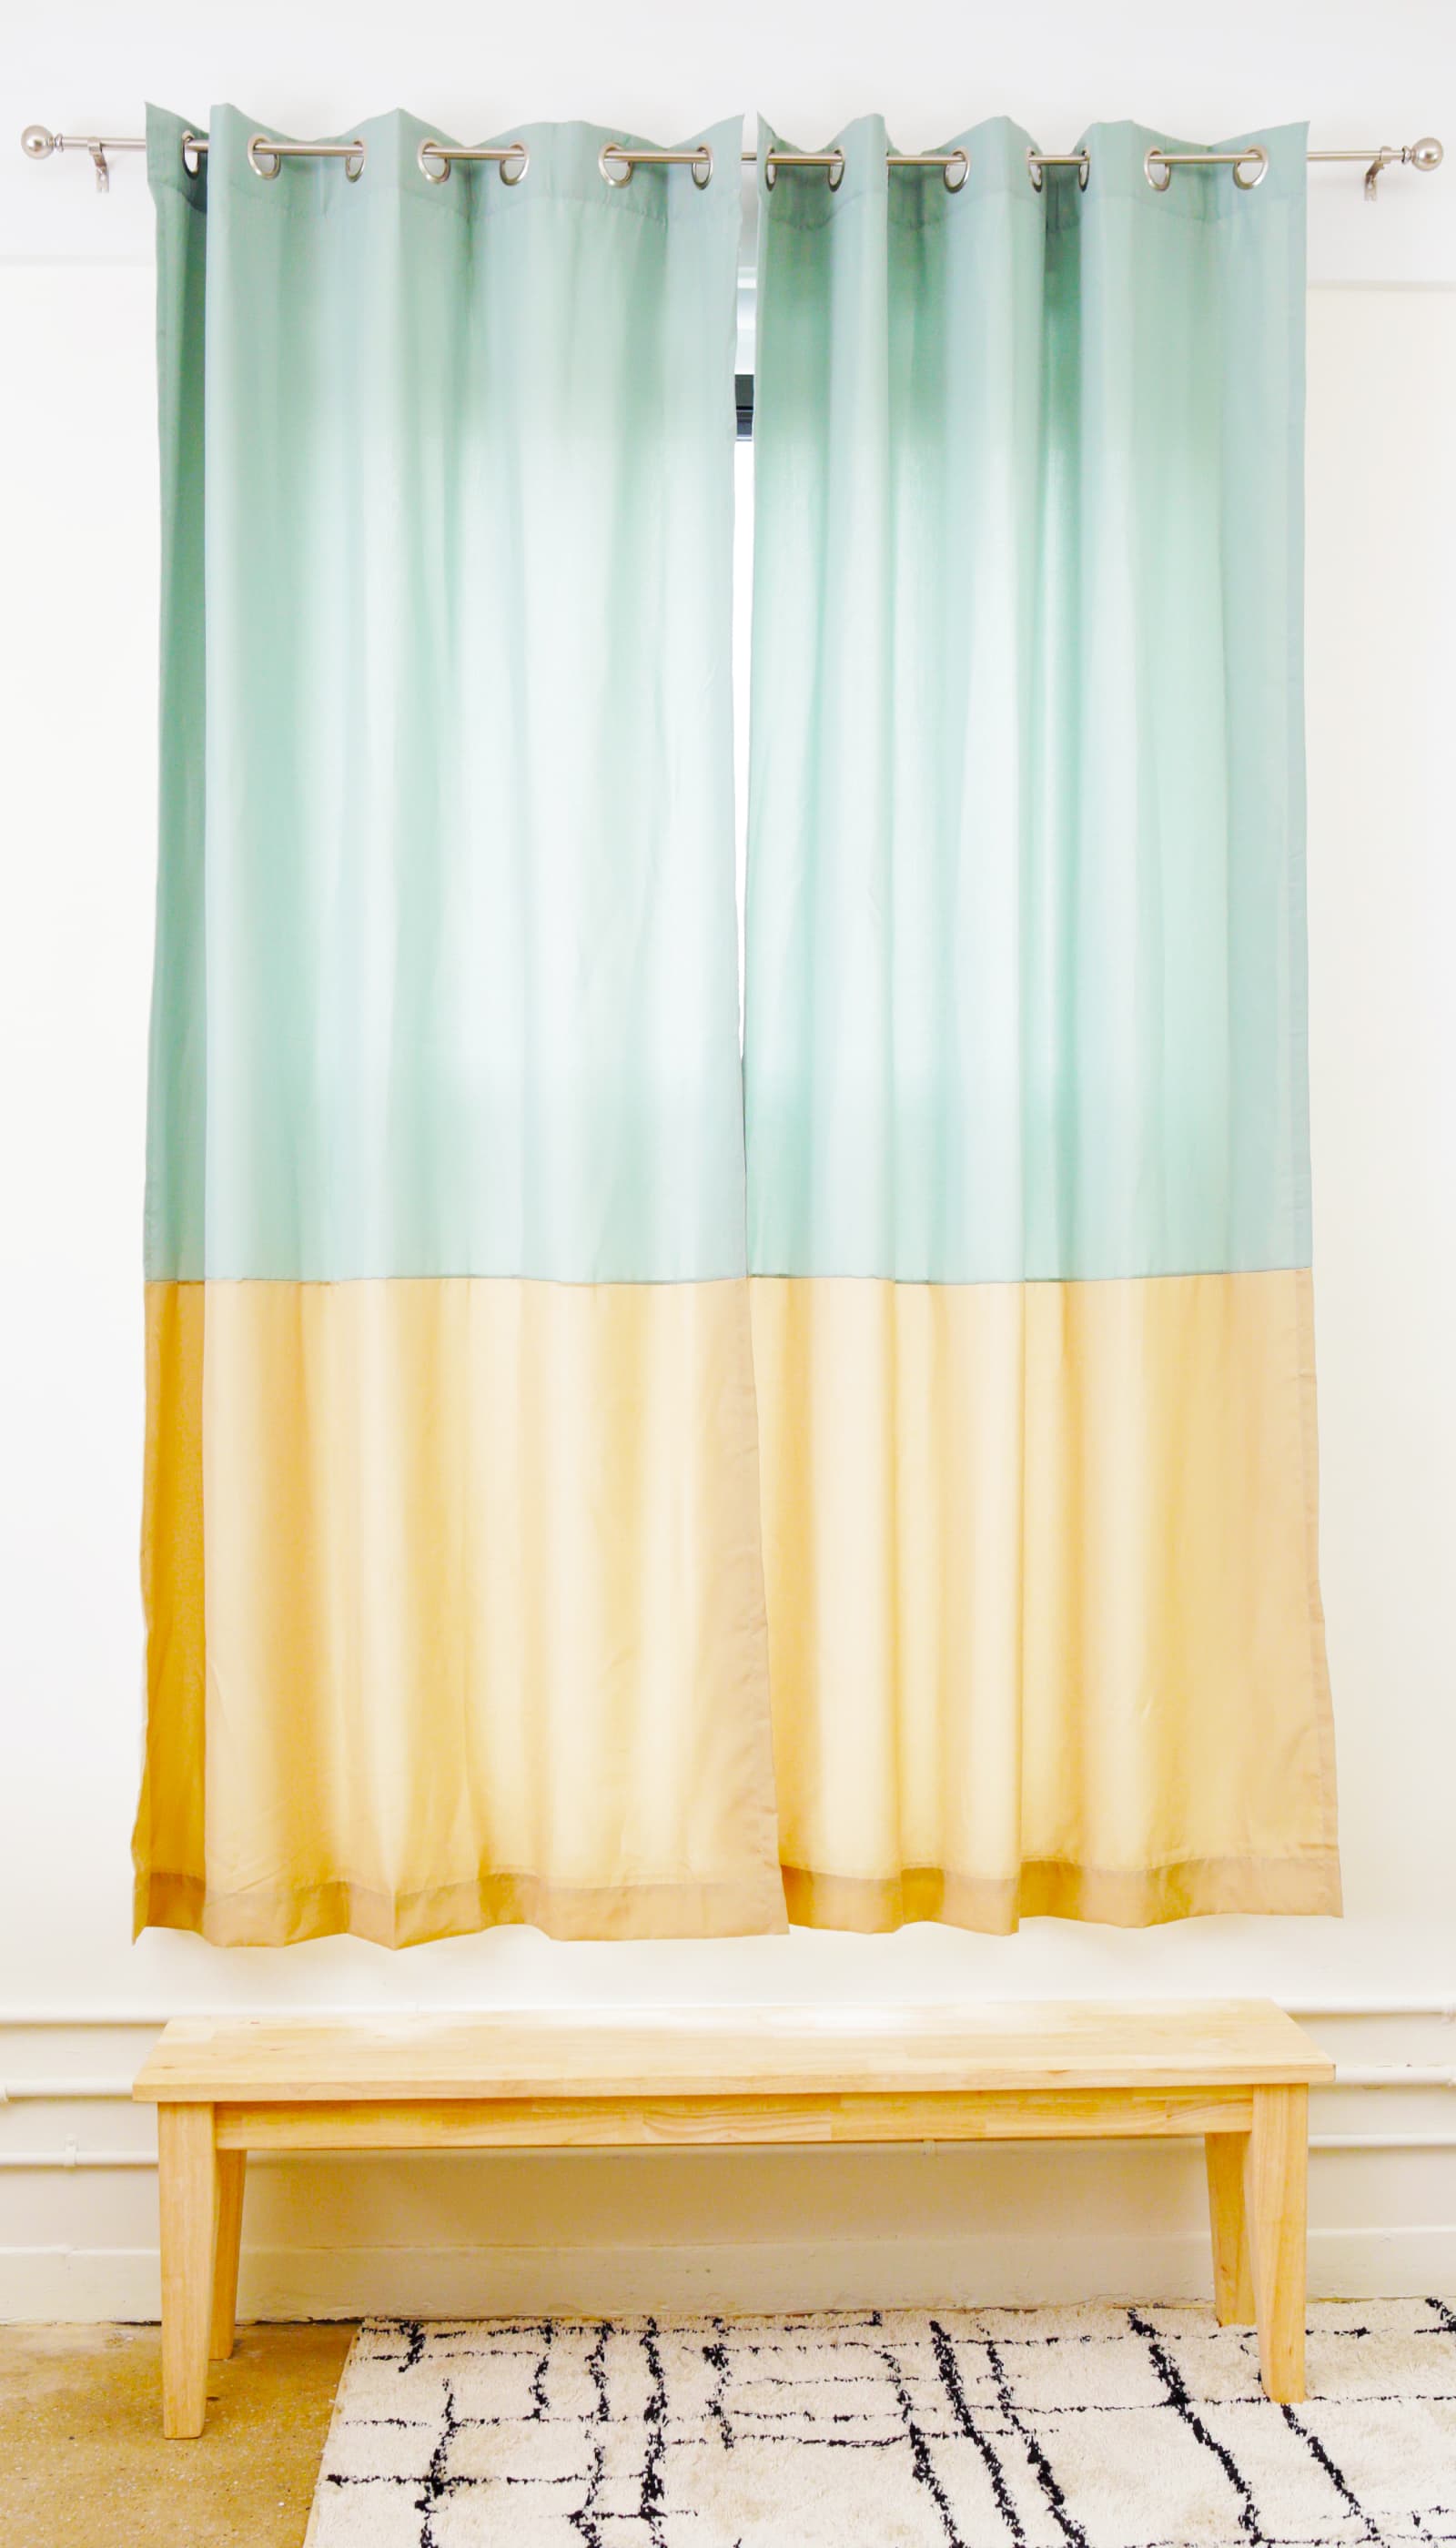 12 Pieces Shower Curtain Hooks Decorative Drape Hangers Bathing